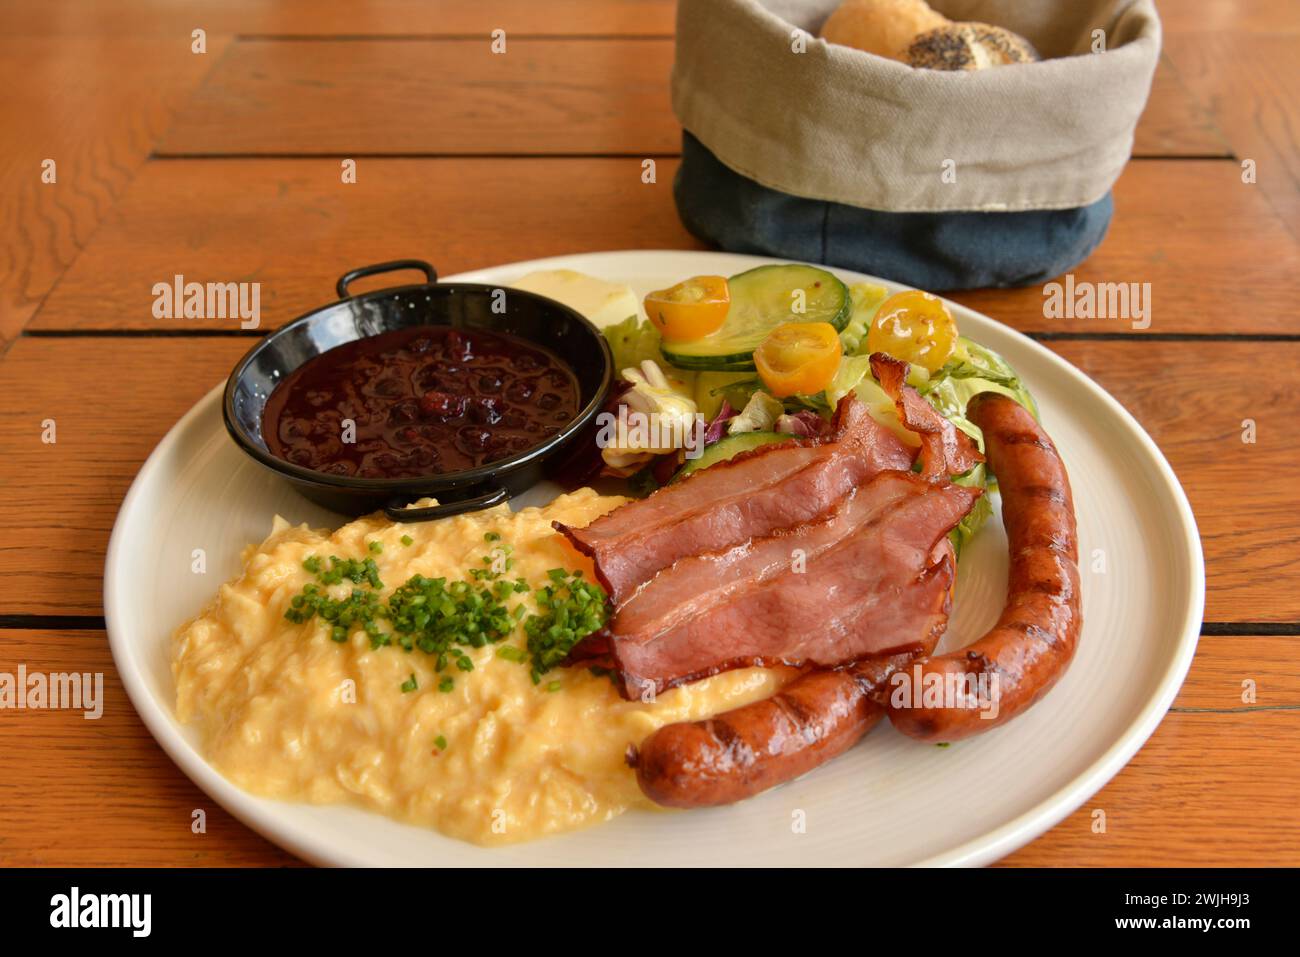 Petit déjeuner polonais avec bacon, saucisses, œufs brouillés, salade fraîche, confiture, beurre, et panier de pain sur la table en bois, Pologne, UE Banque D'Images